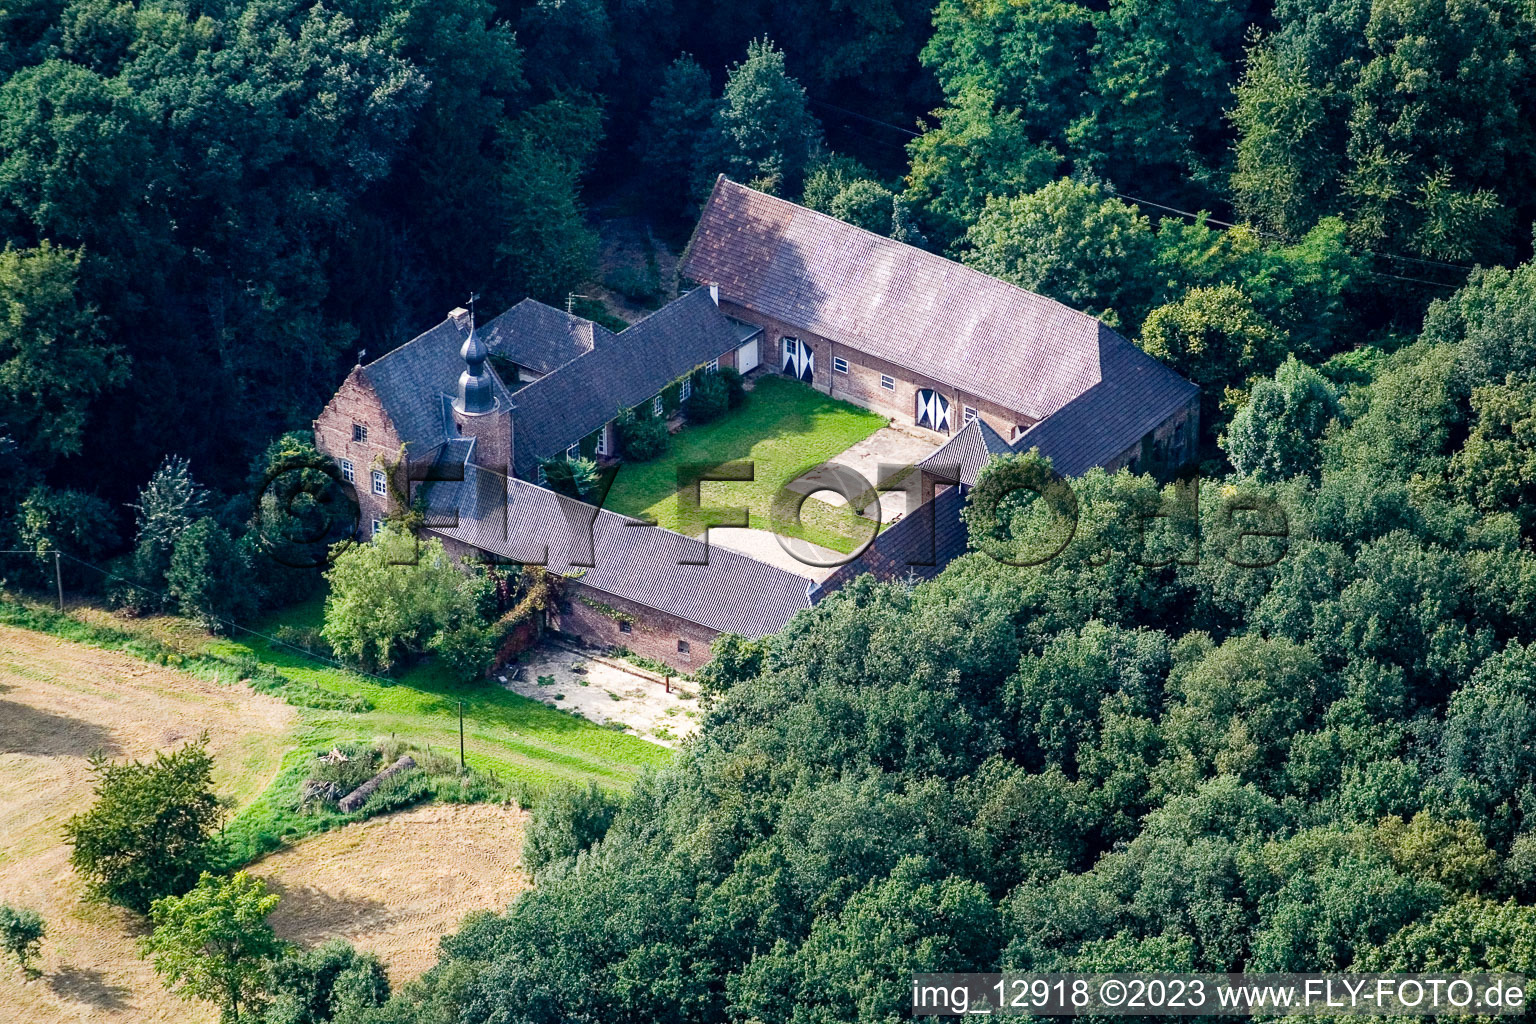 Zwischen Kerken und Limburg im Bundesland Nordrhein-Westfalen, Deutschland von der Drohne aus gesehen